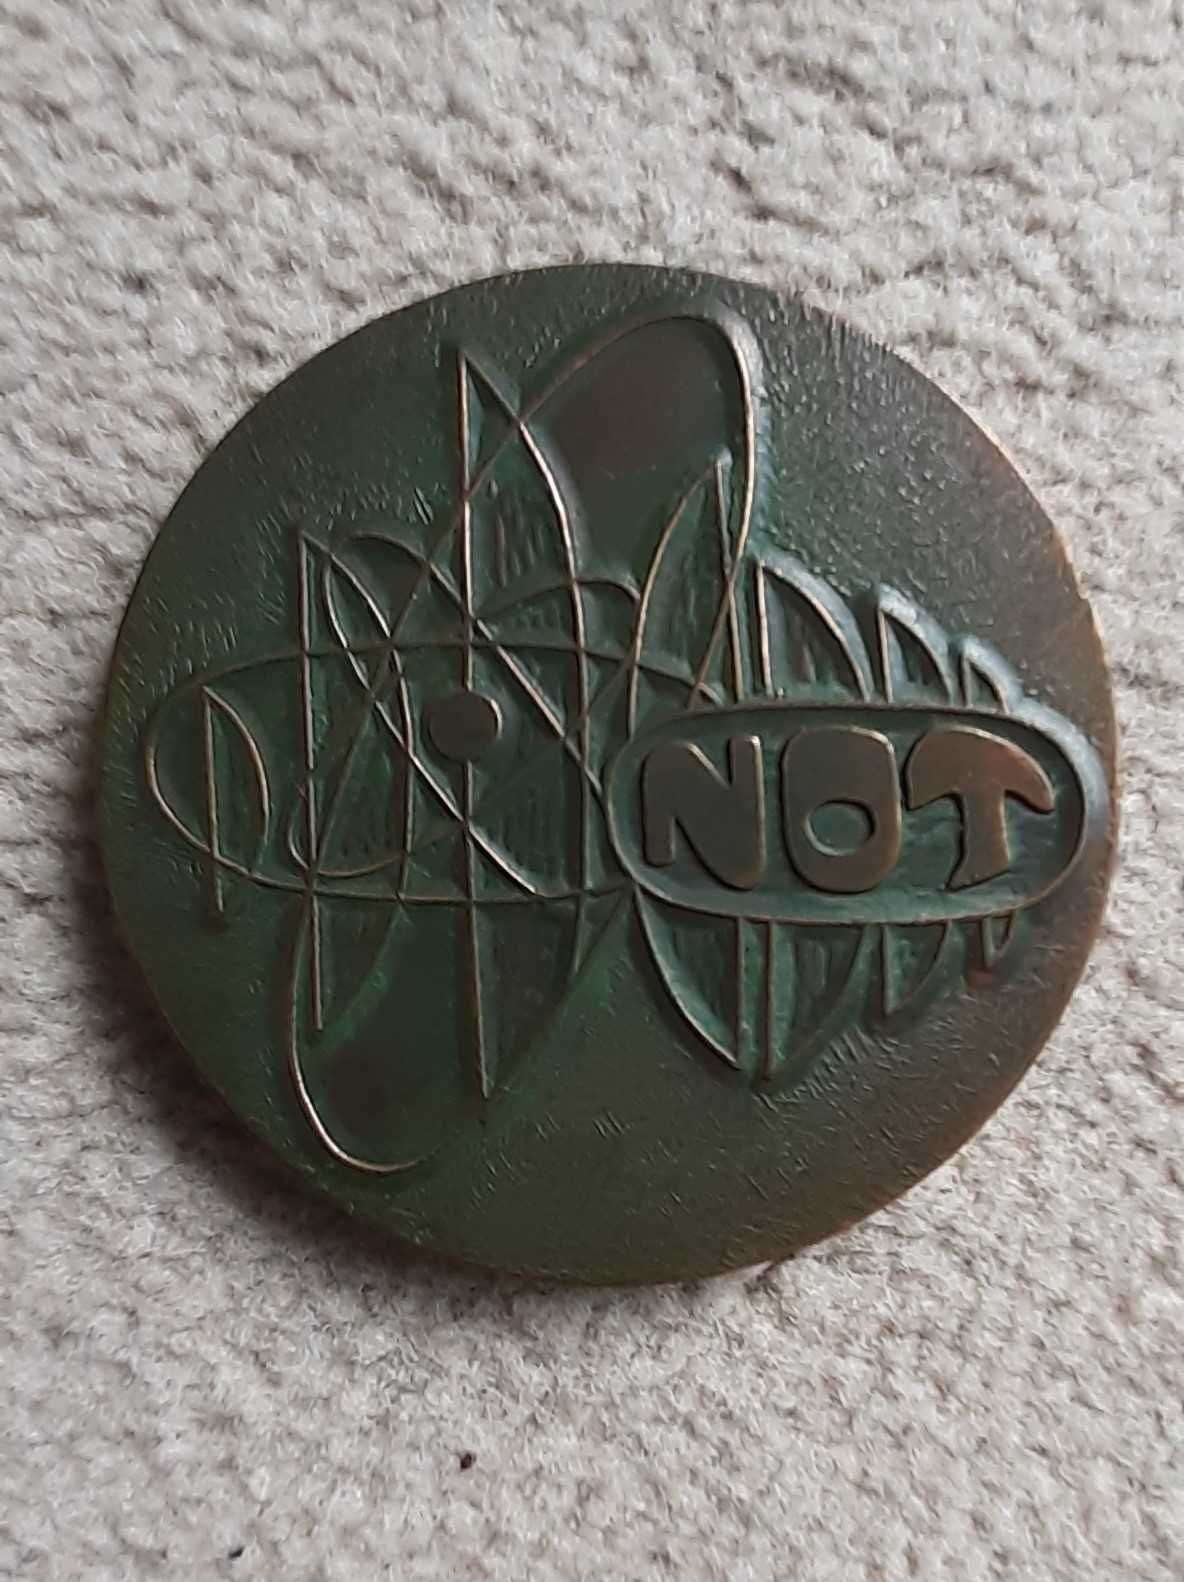 medal okolicznościowy Naczelnej Organizacji Technicznej NOT 1980